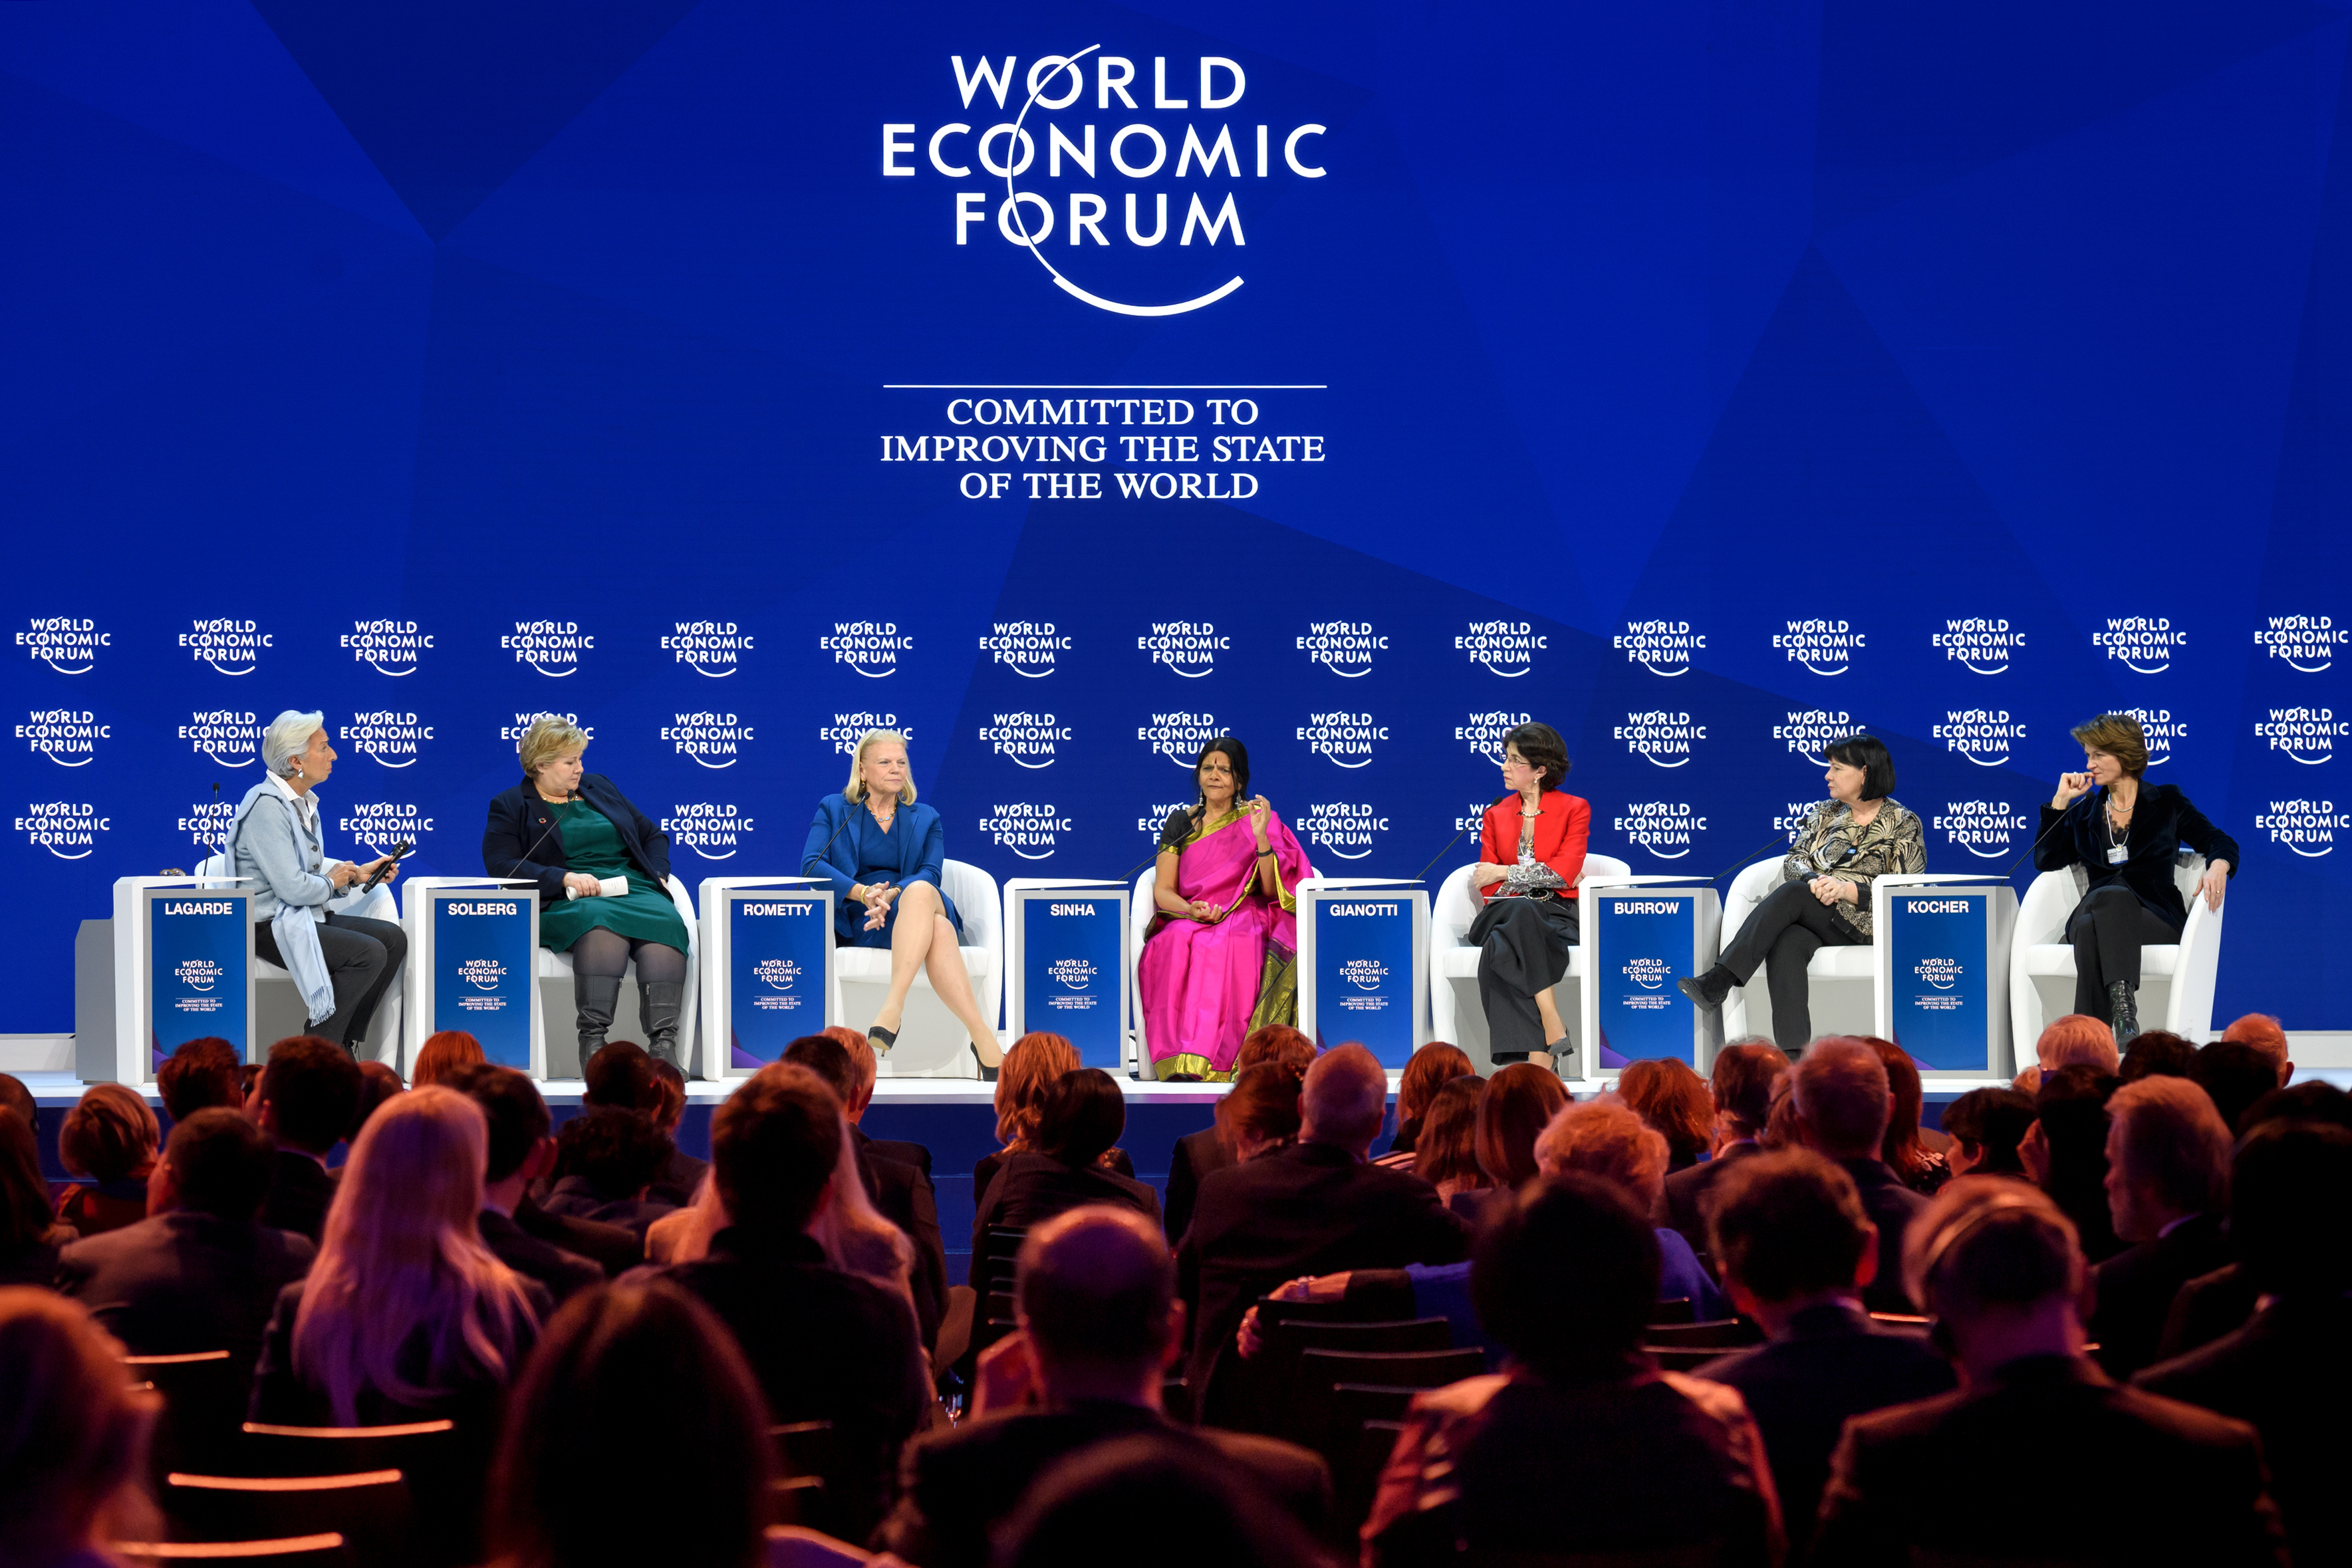 Az International Trade Union Confederation főtitkára, Sharan Burrow (jobbról a második) a davosi Világgazdasági Fórumon 2018-ban, többek között az IMF vezetője, Christine Lagarde, illetve a norvég miniszterelnök, Erna Solberg társaságában